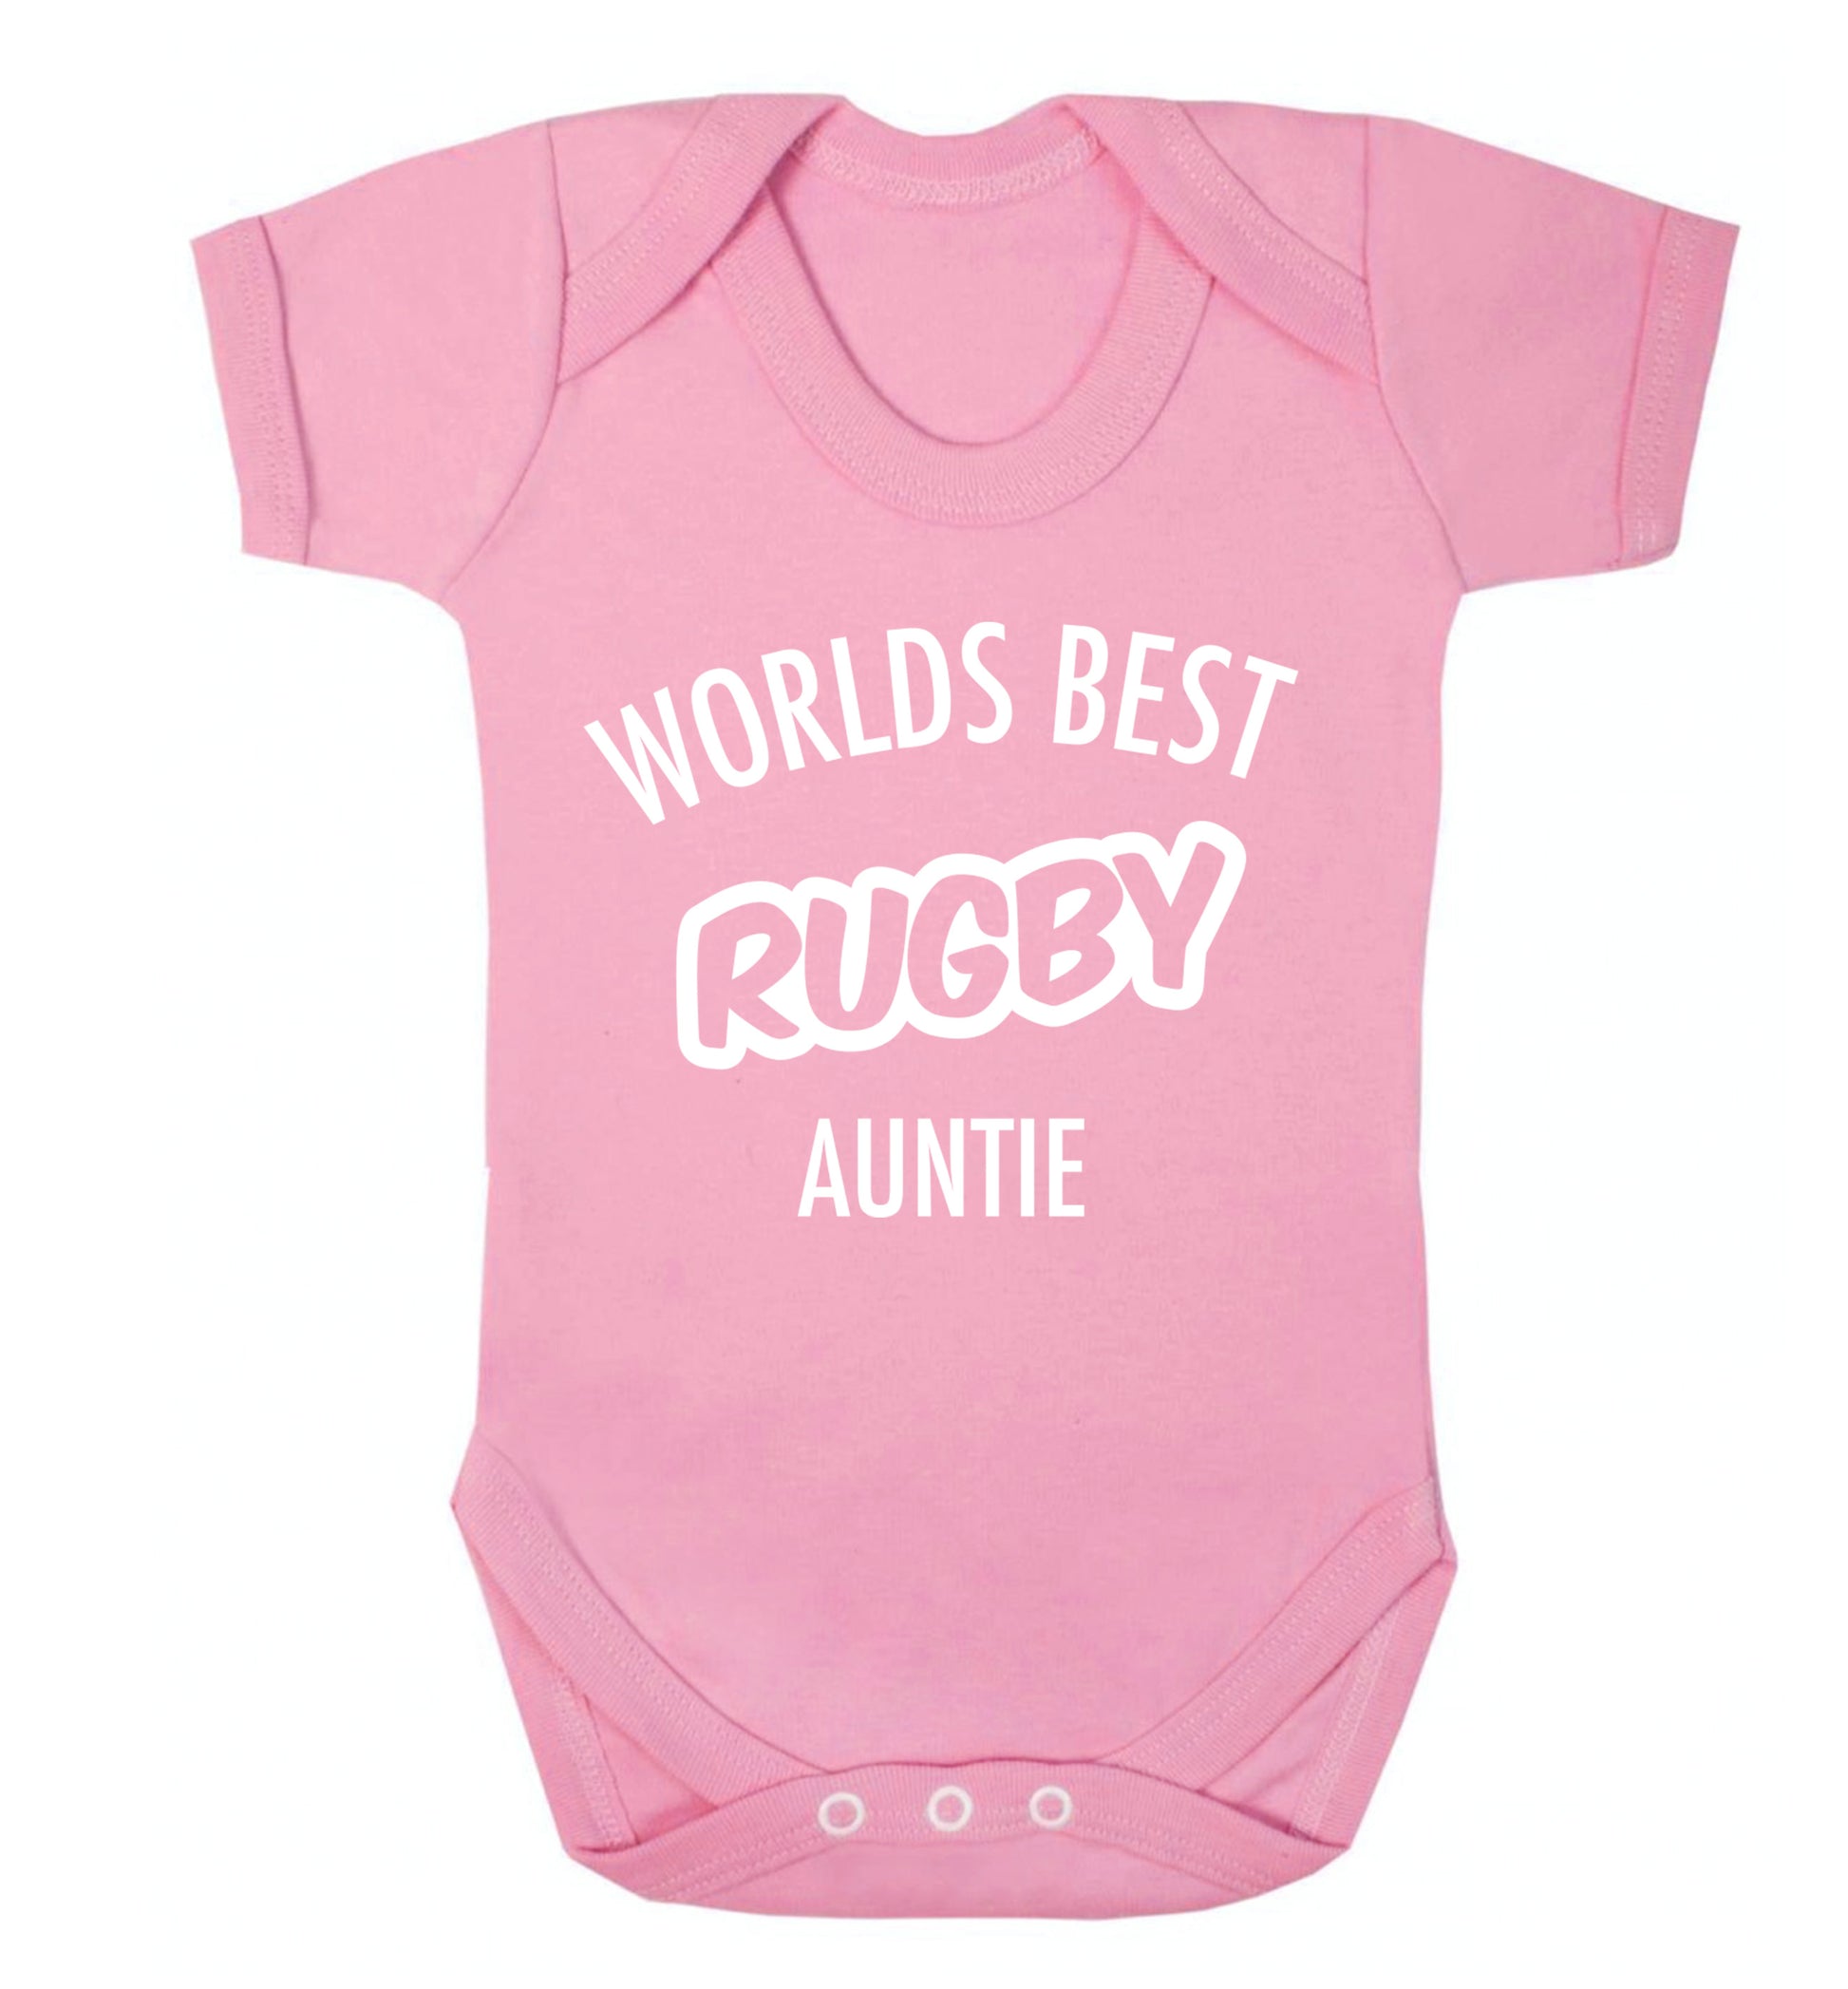 Worlds best rugby auntie Baby Vest pale pink 18-24 months